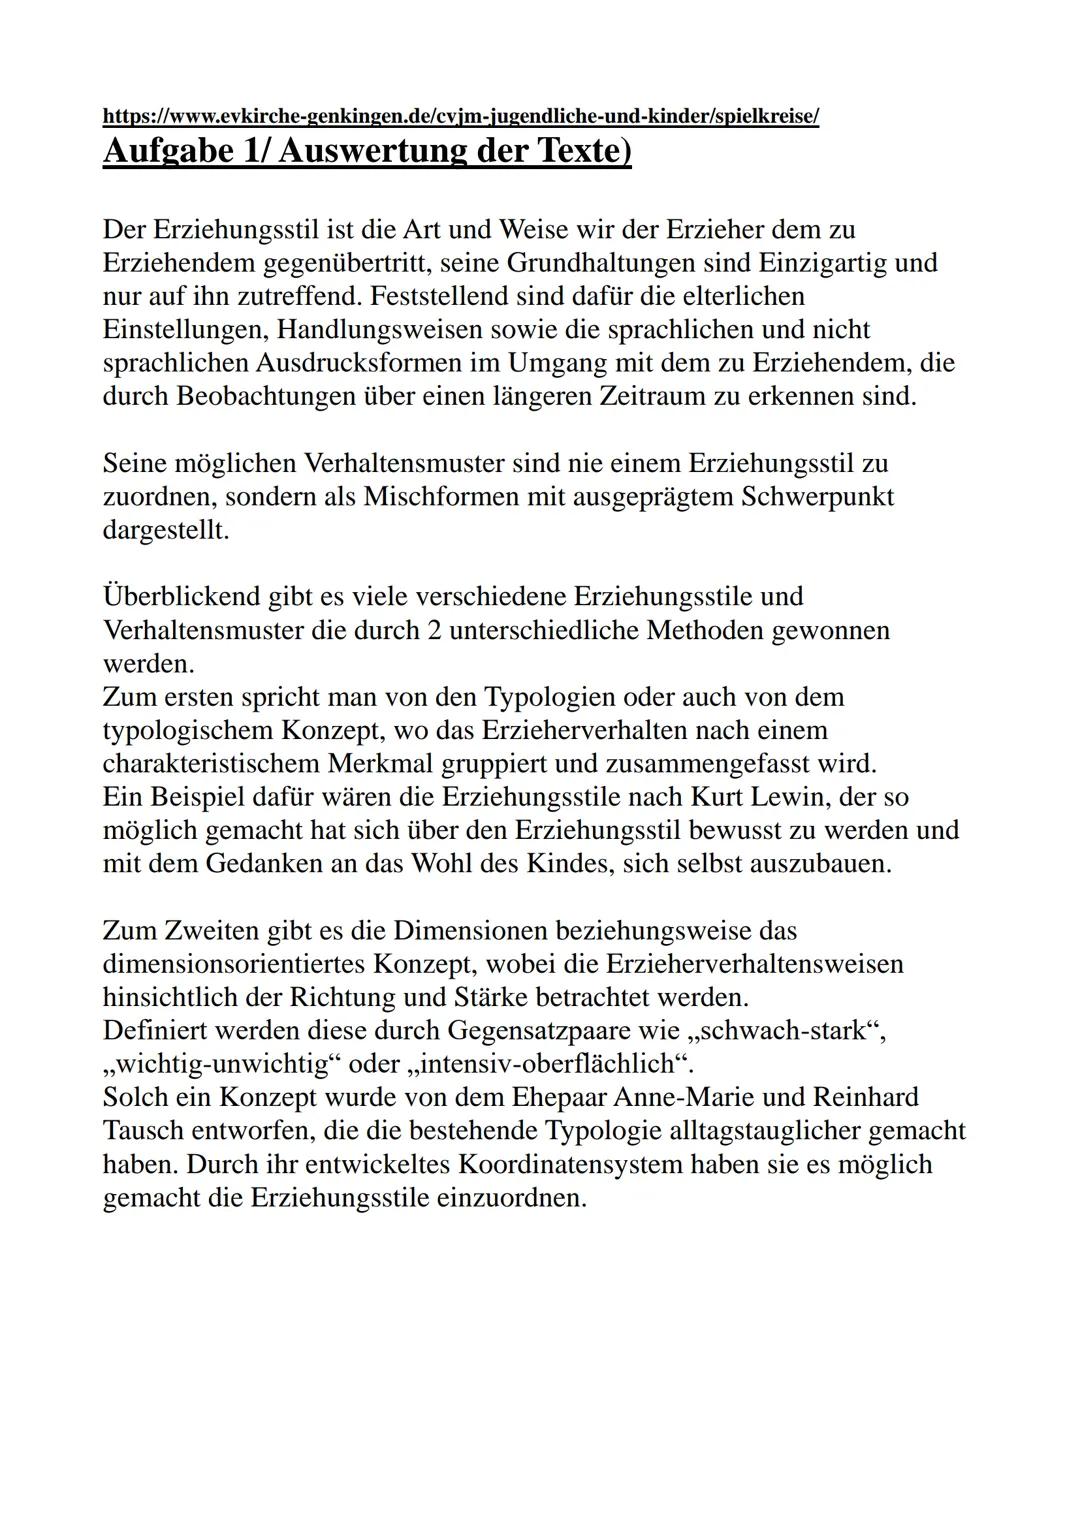 01.04.2020
Pädagogik
- Erziehungsstile -
Von: Luisa Groß
https://www.mamawissen.de/category/kleinkind/entwicklung-und-erziehung/ Inhaltsverz